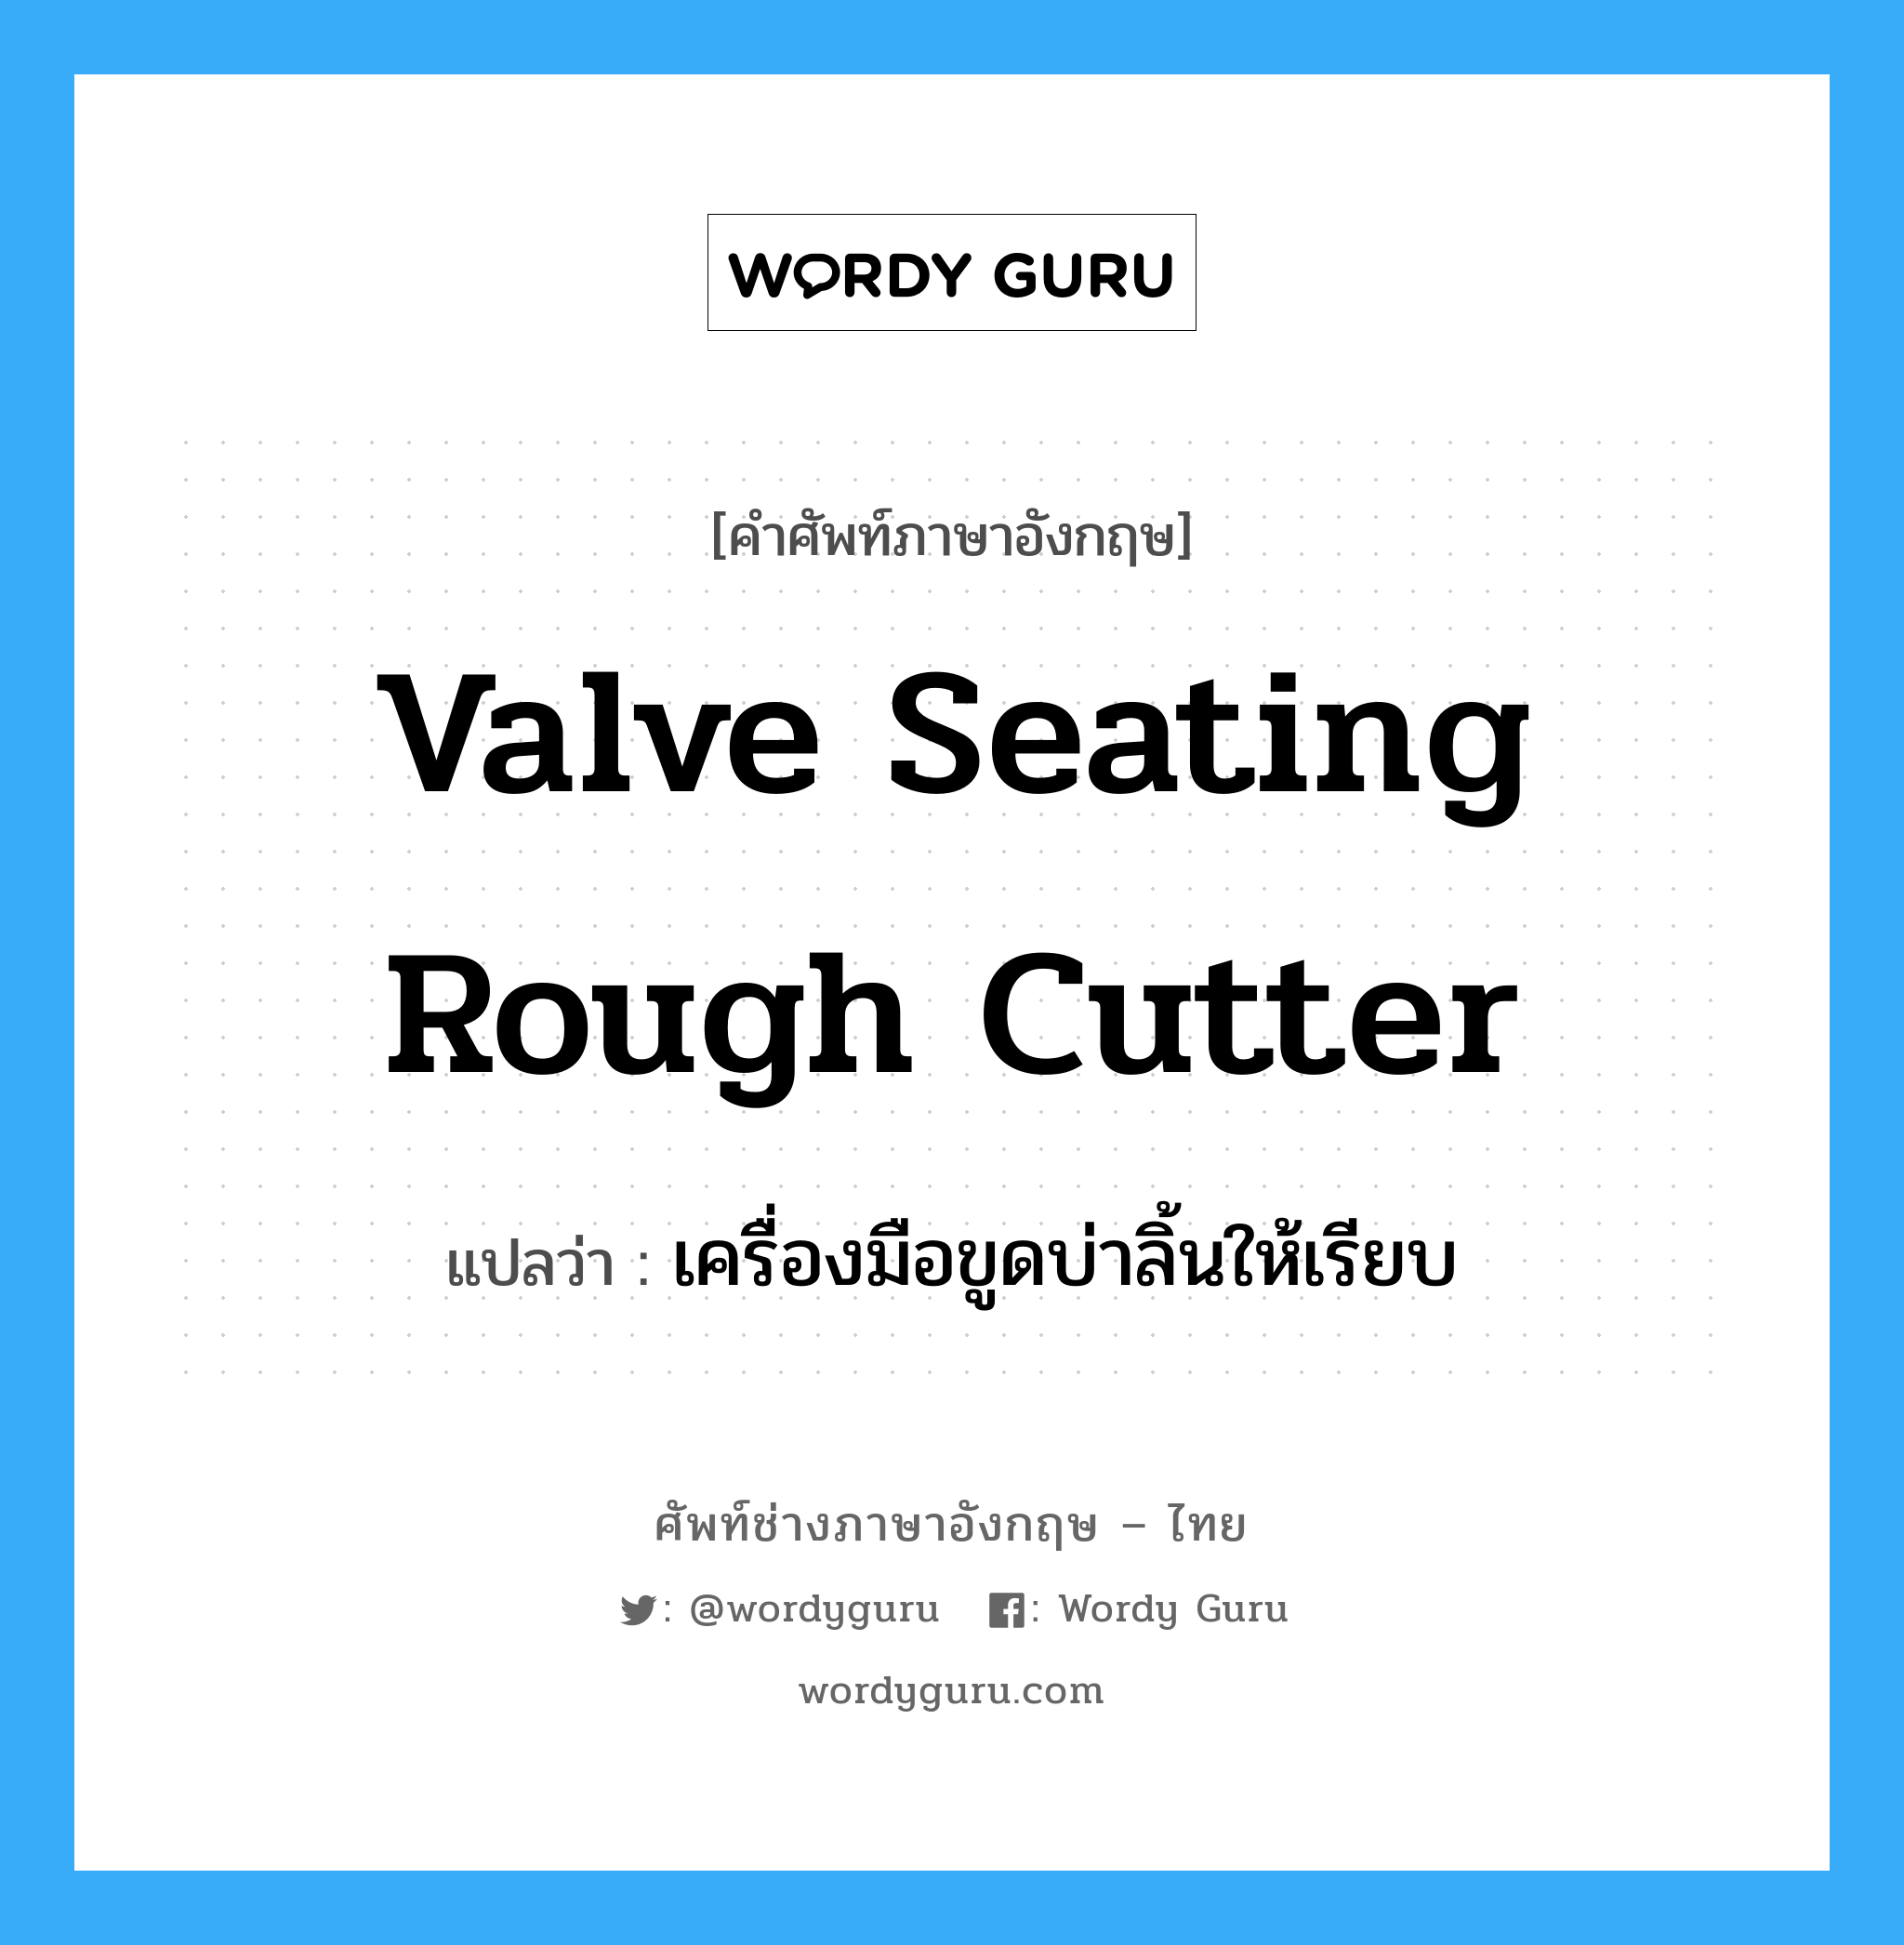 เครื่องมือขูดบ่าลิ้นให้เรียบ ภาษาอังกฤษ?, คำศัพท์ช่างภาษาอังกฤษ - ไทย เครื่องมือขูดบ่าลิ้นให้เรียบ คำศัพท์ภาษาอังกฤษ เครื่องมือขูดบ่าลิ้นให้เรียบ แปลว่า valve seating rough cutter